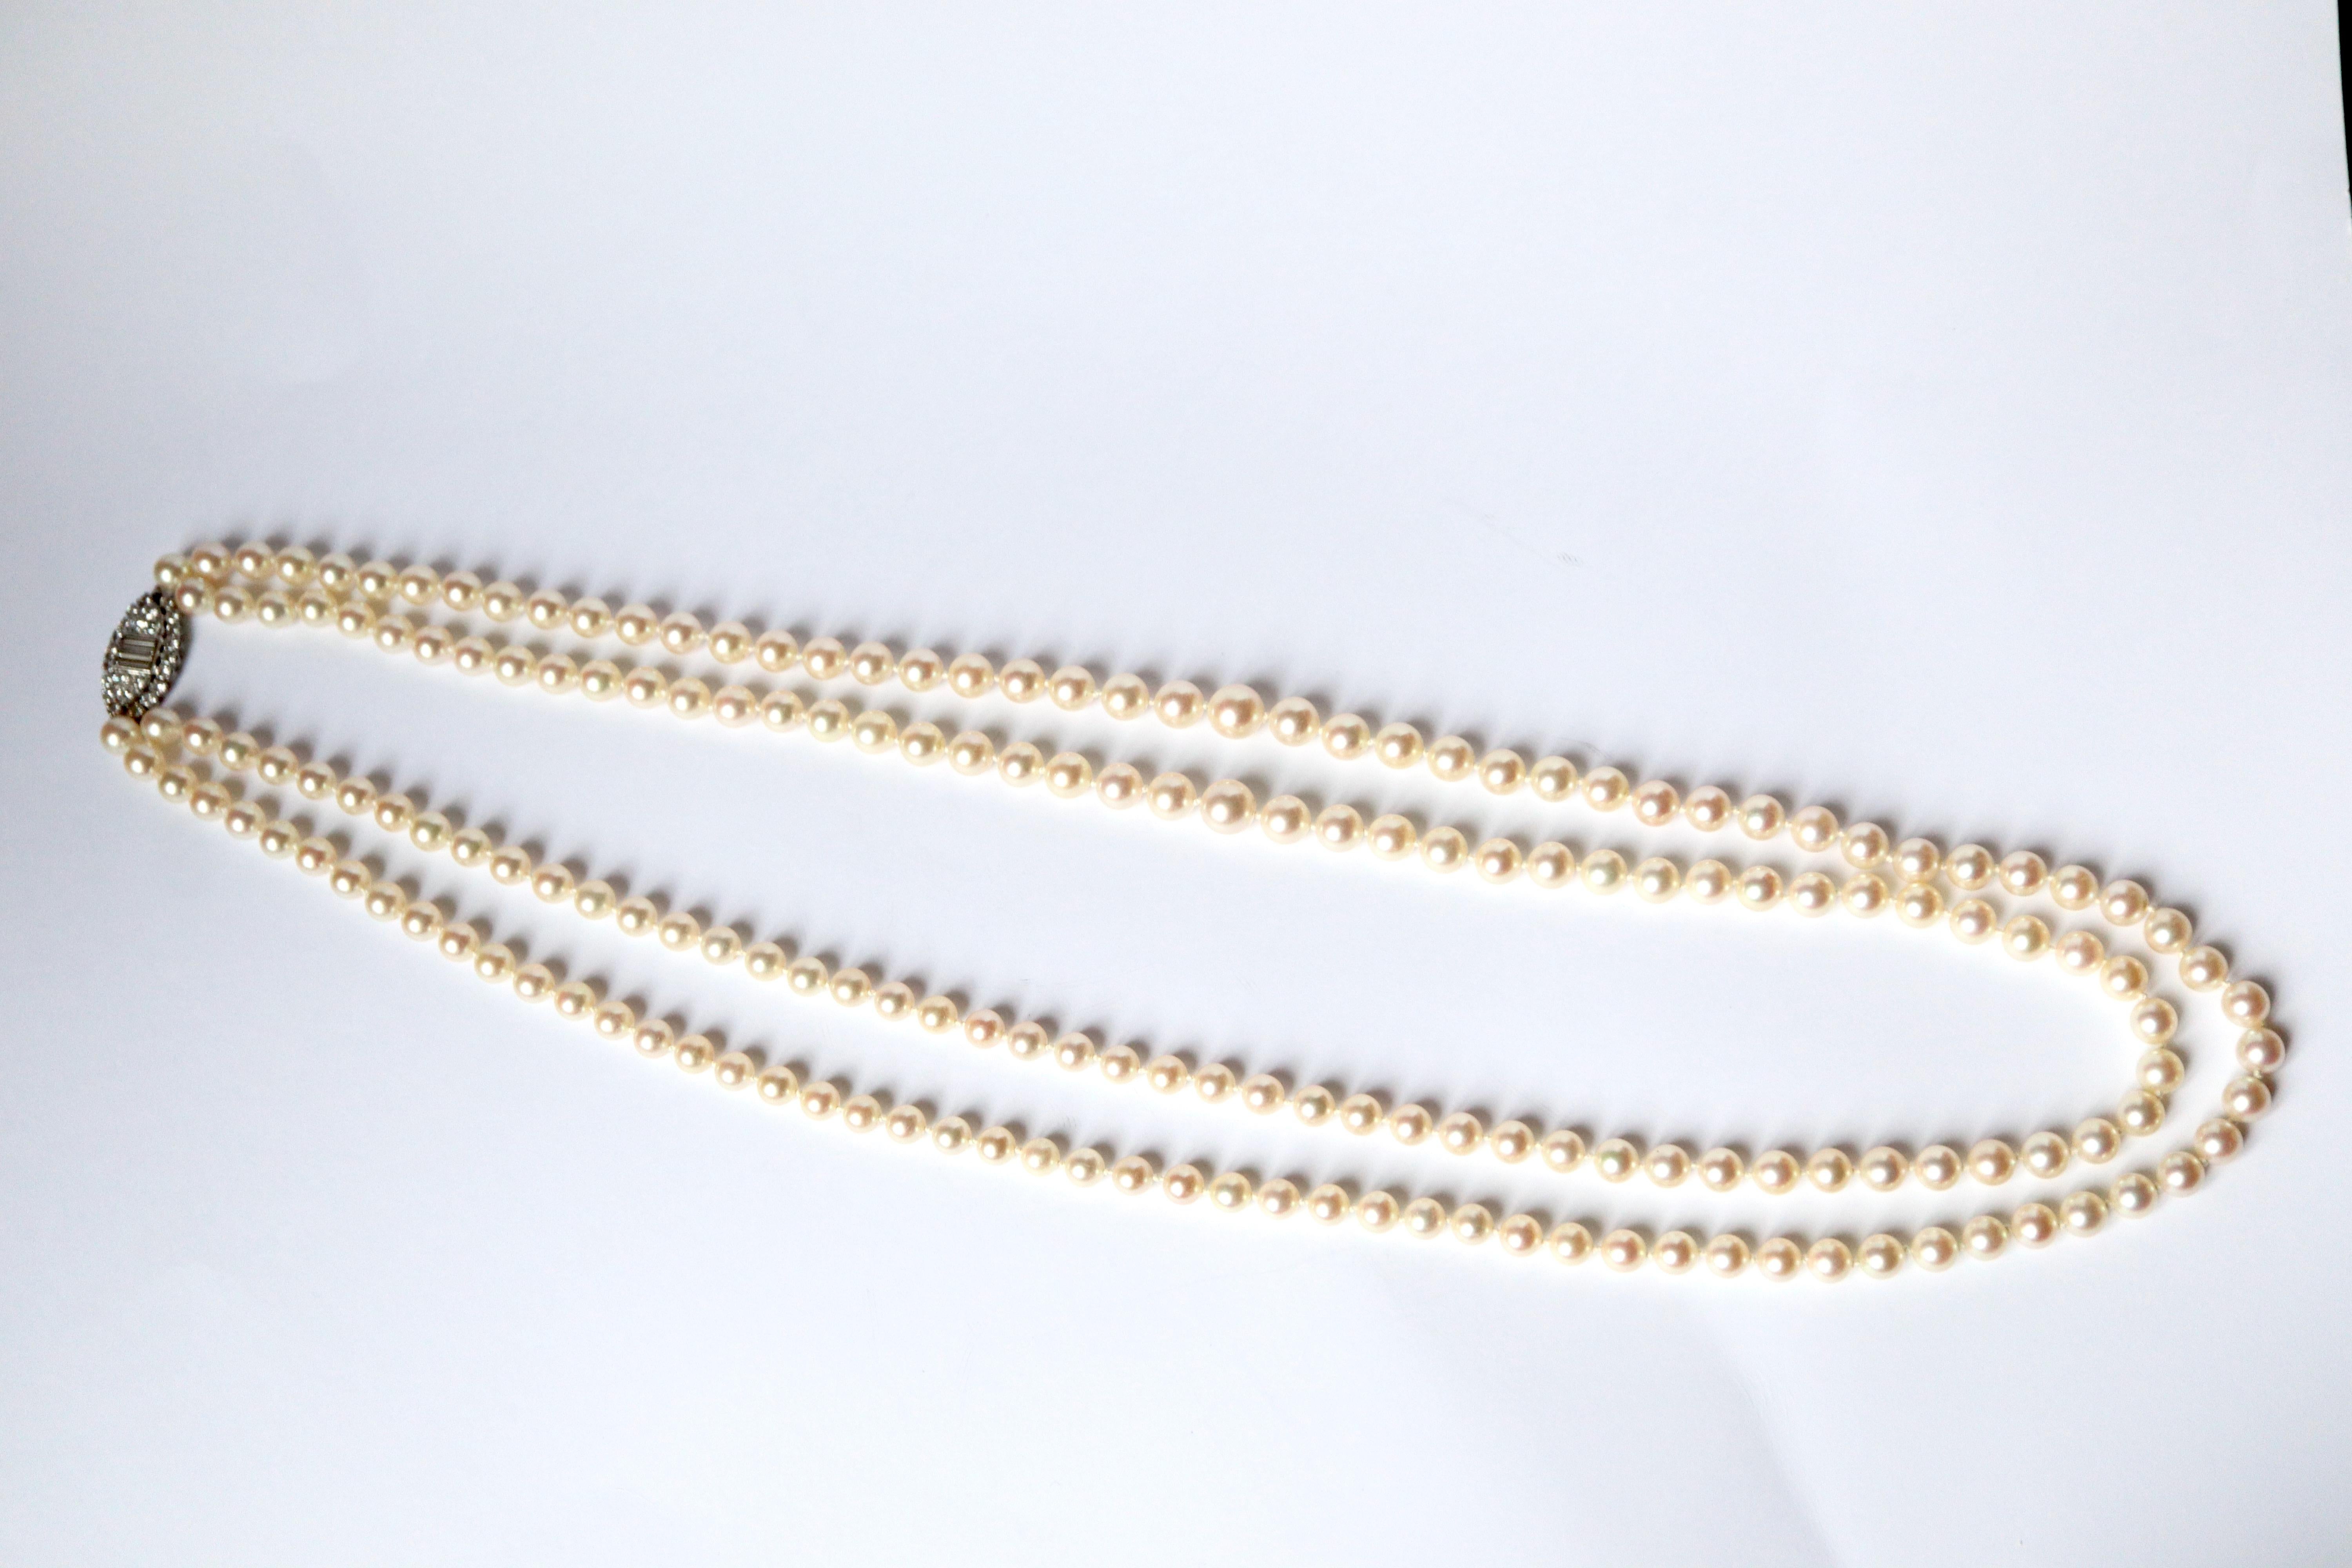 Baguette Cut Van Cleef & Arpels Necklace Sautoir Pearls Diamonds White Gold 18 Kt Platinum